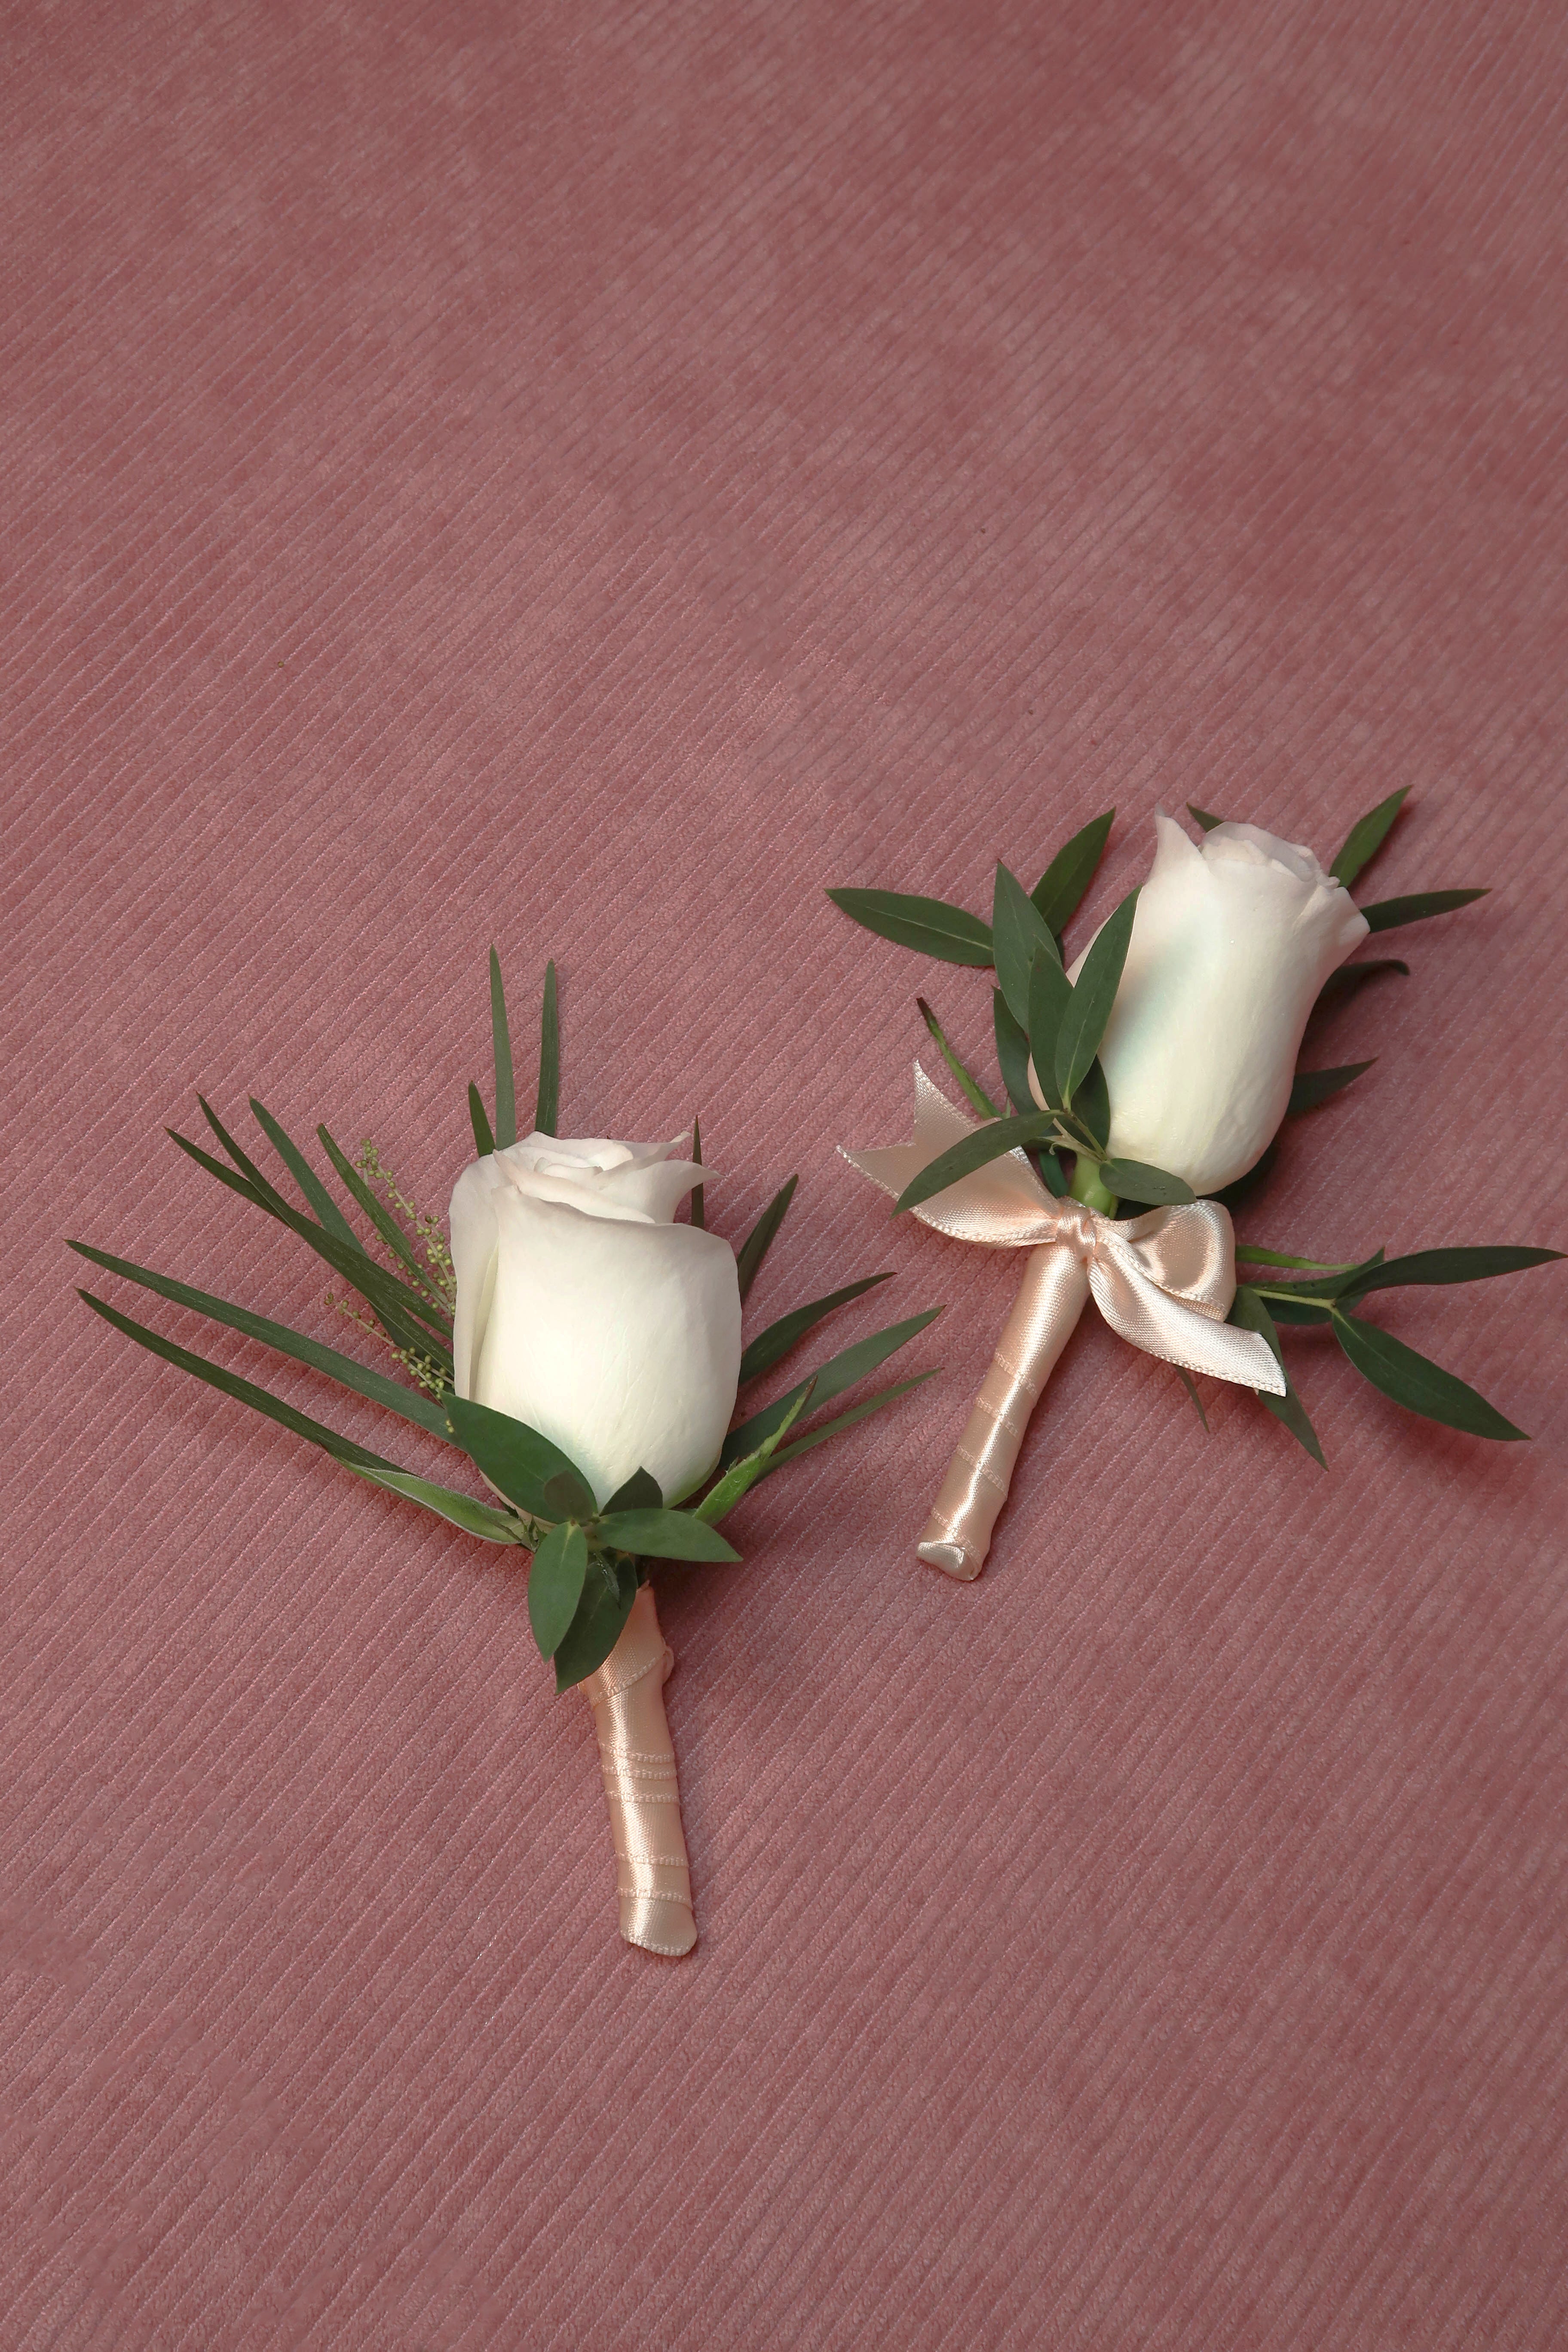 新娘手捧花 - 經典款白玫瑰